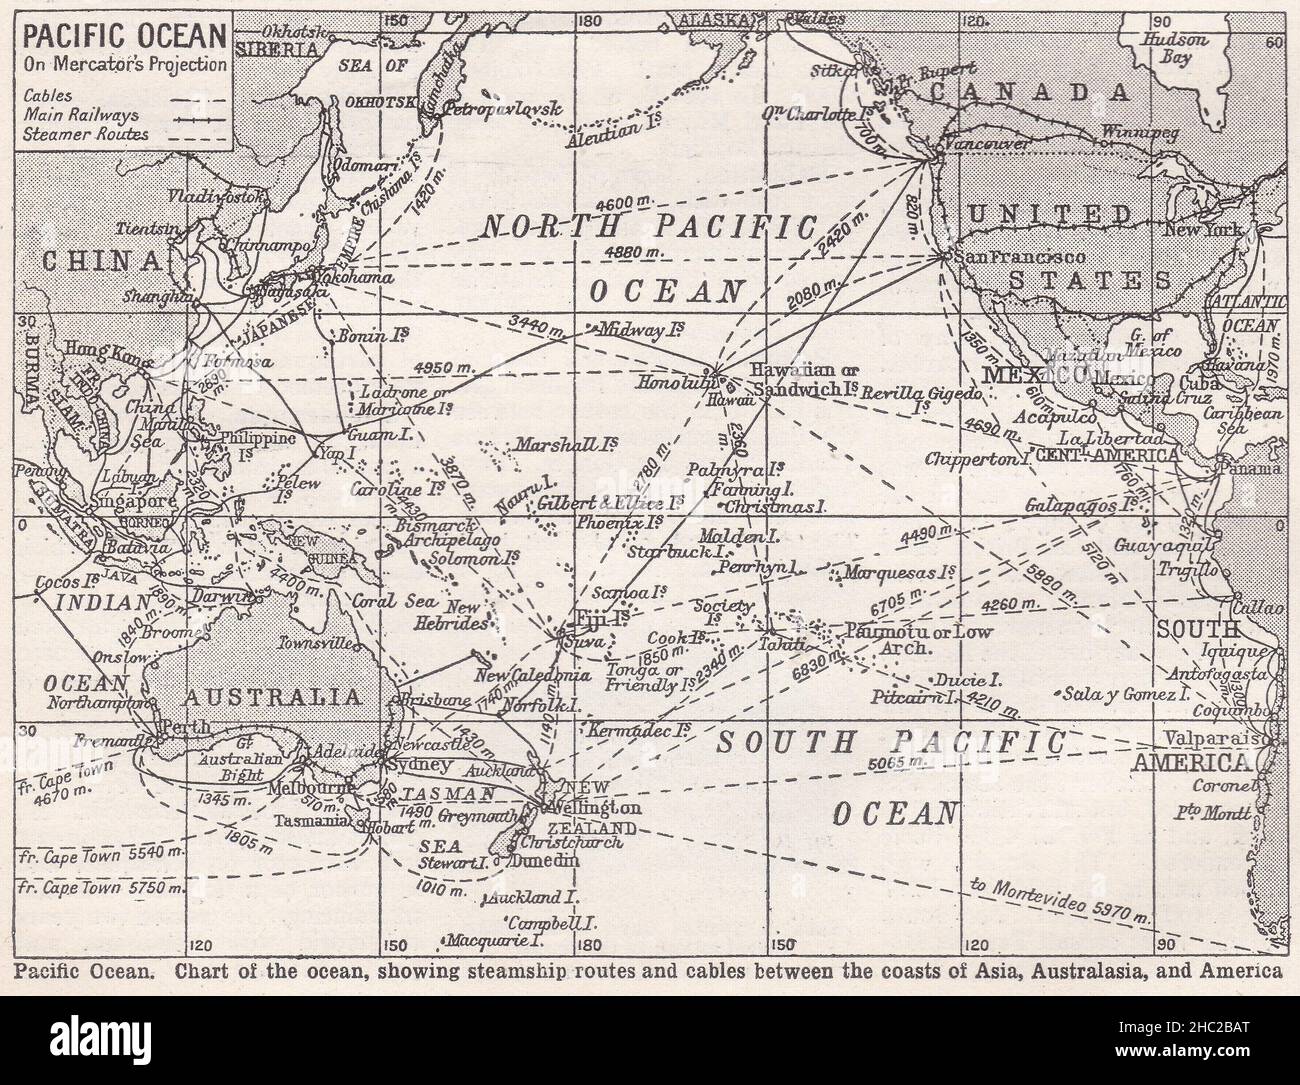 Vintage-Karte des Pazifischen Ozeans auf Mercator's Projection - Karte des Ozeans, zeigt Routen von Dampfschiffen und Kabel zwischen den Küsten 1930s. Stockfoto